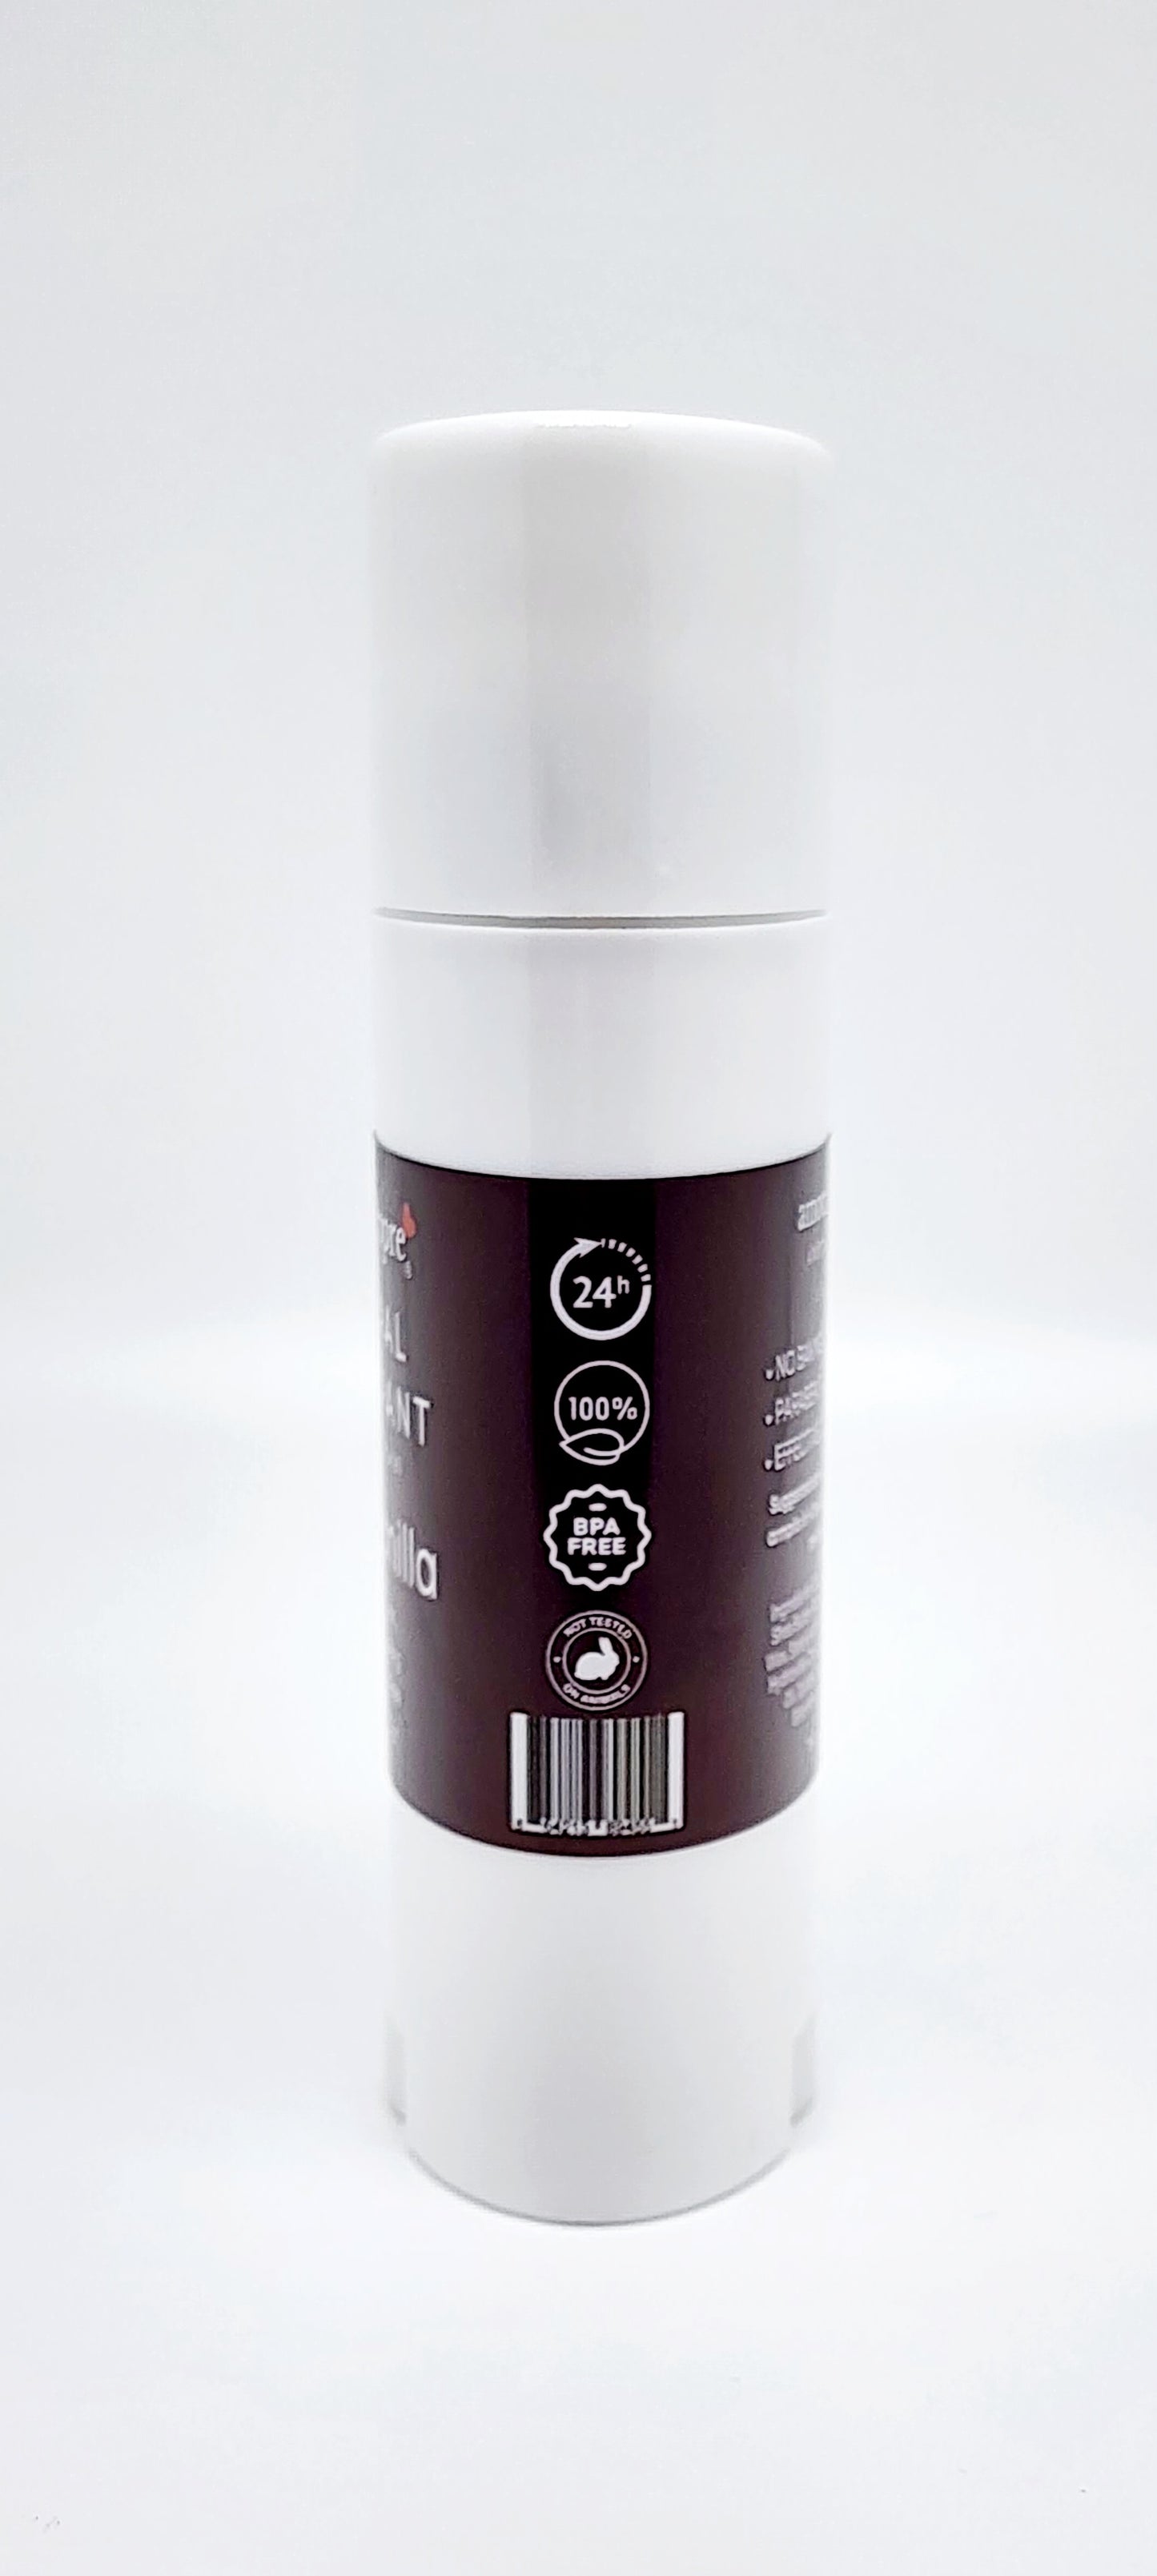 Natural Deodorant with Probiotics